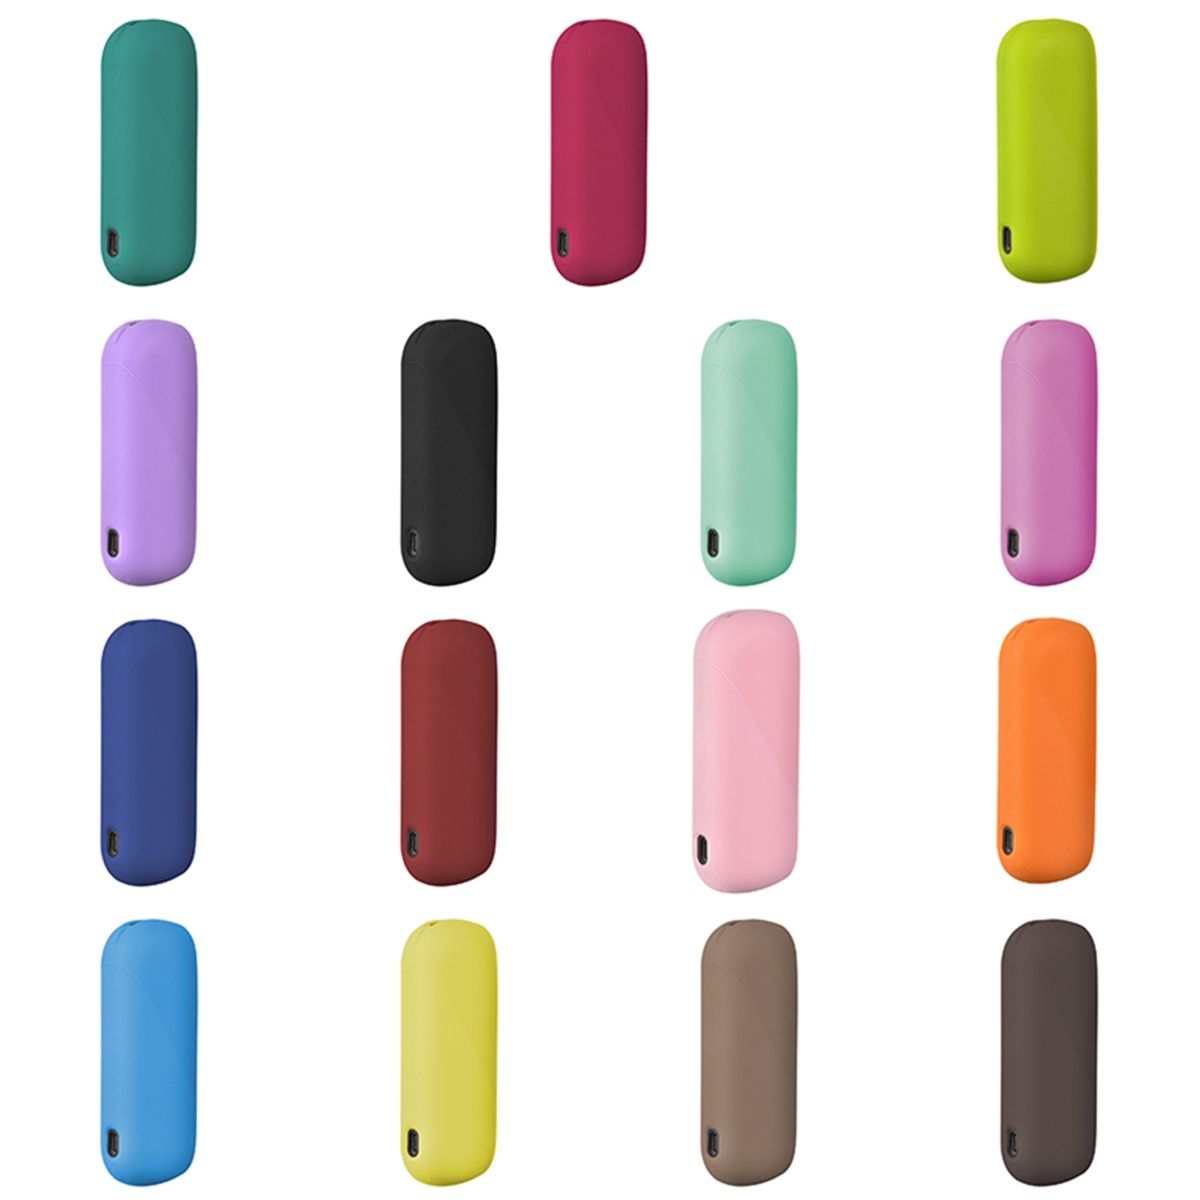 14 Farben neues Design hochwertige Silikon hülle für iqos 3 Duo